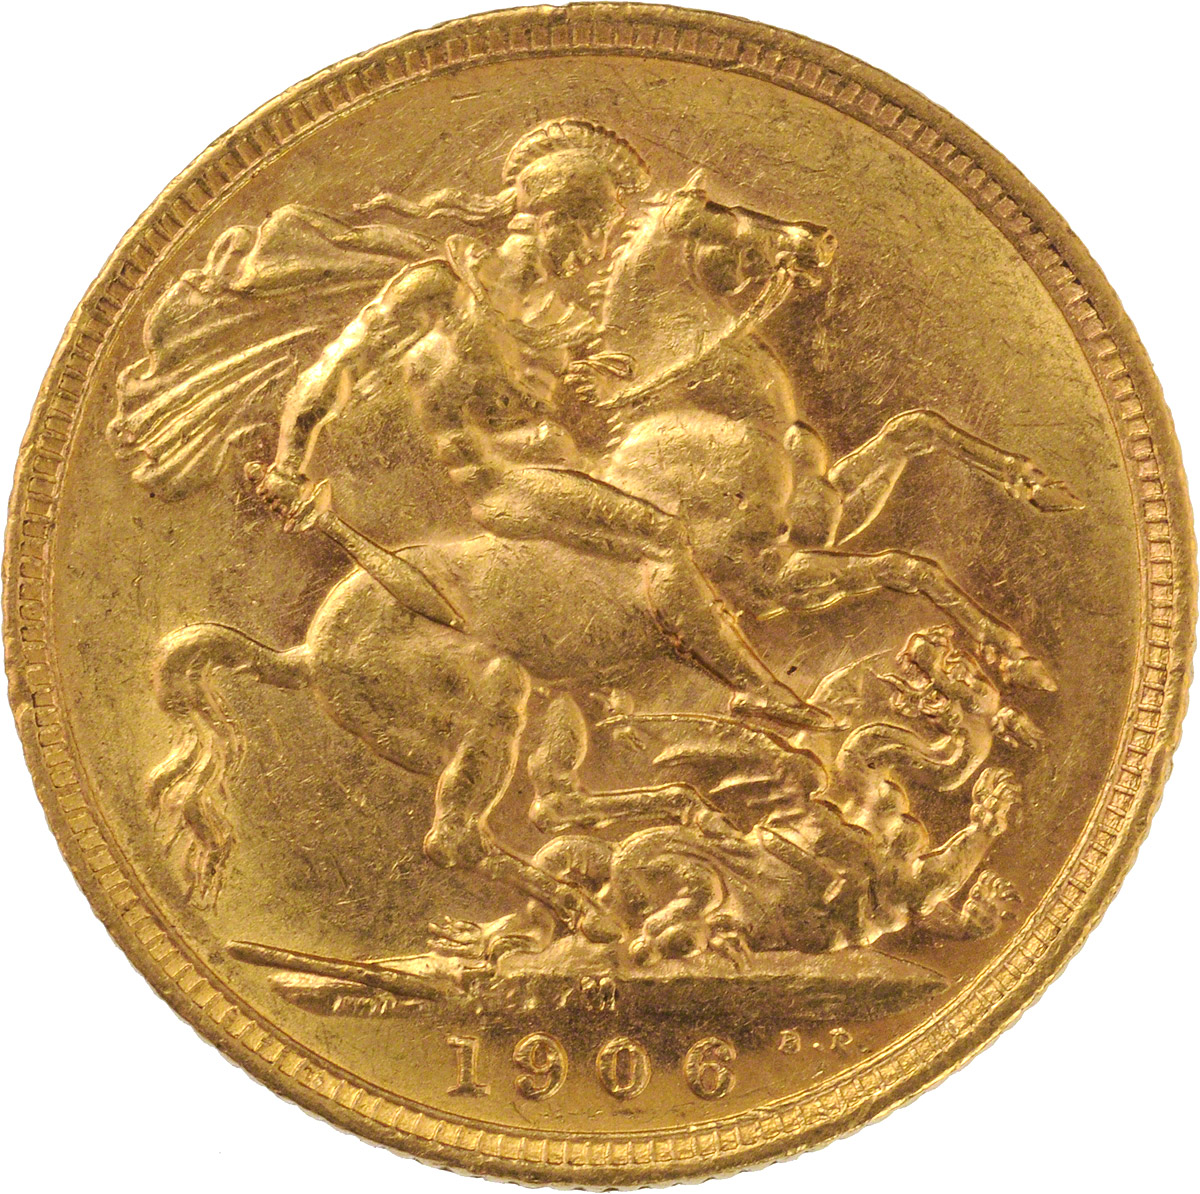 1906 Εδουάρδος Ζ’ (Νομισματοκοπείο Μελβούρνης)